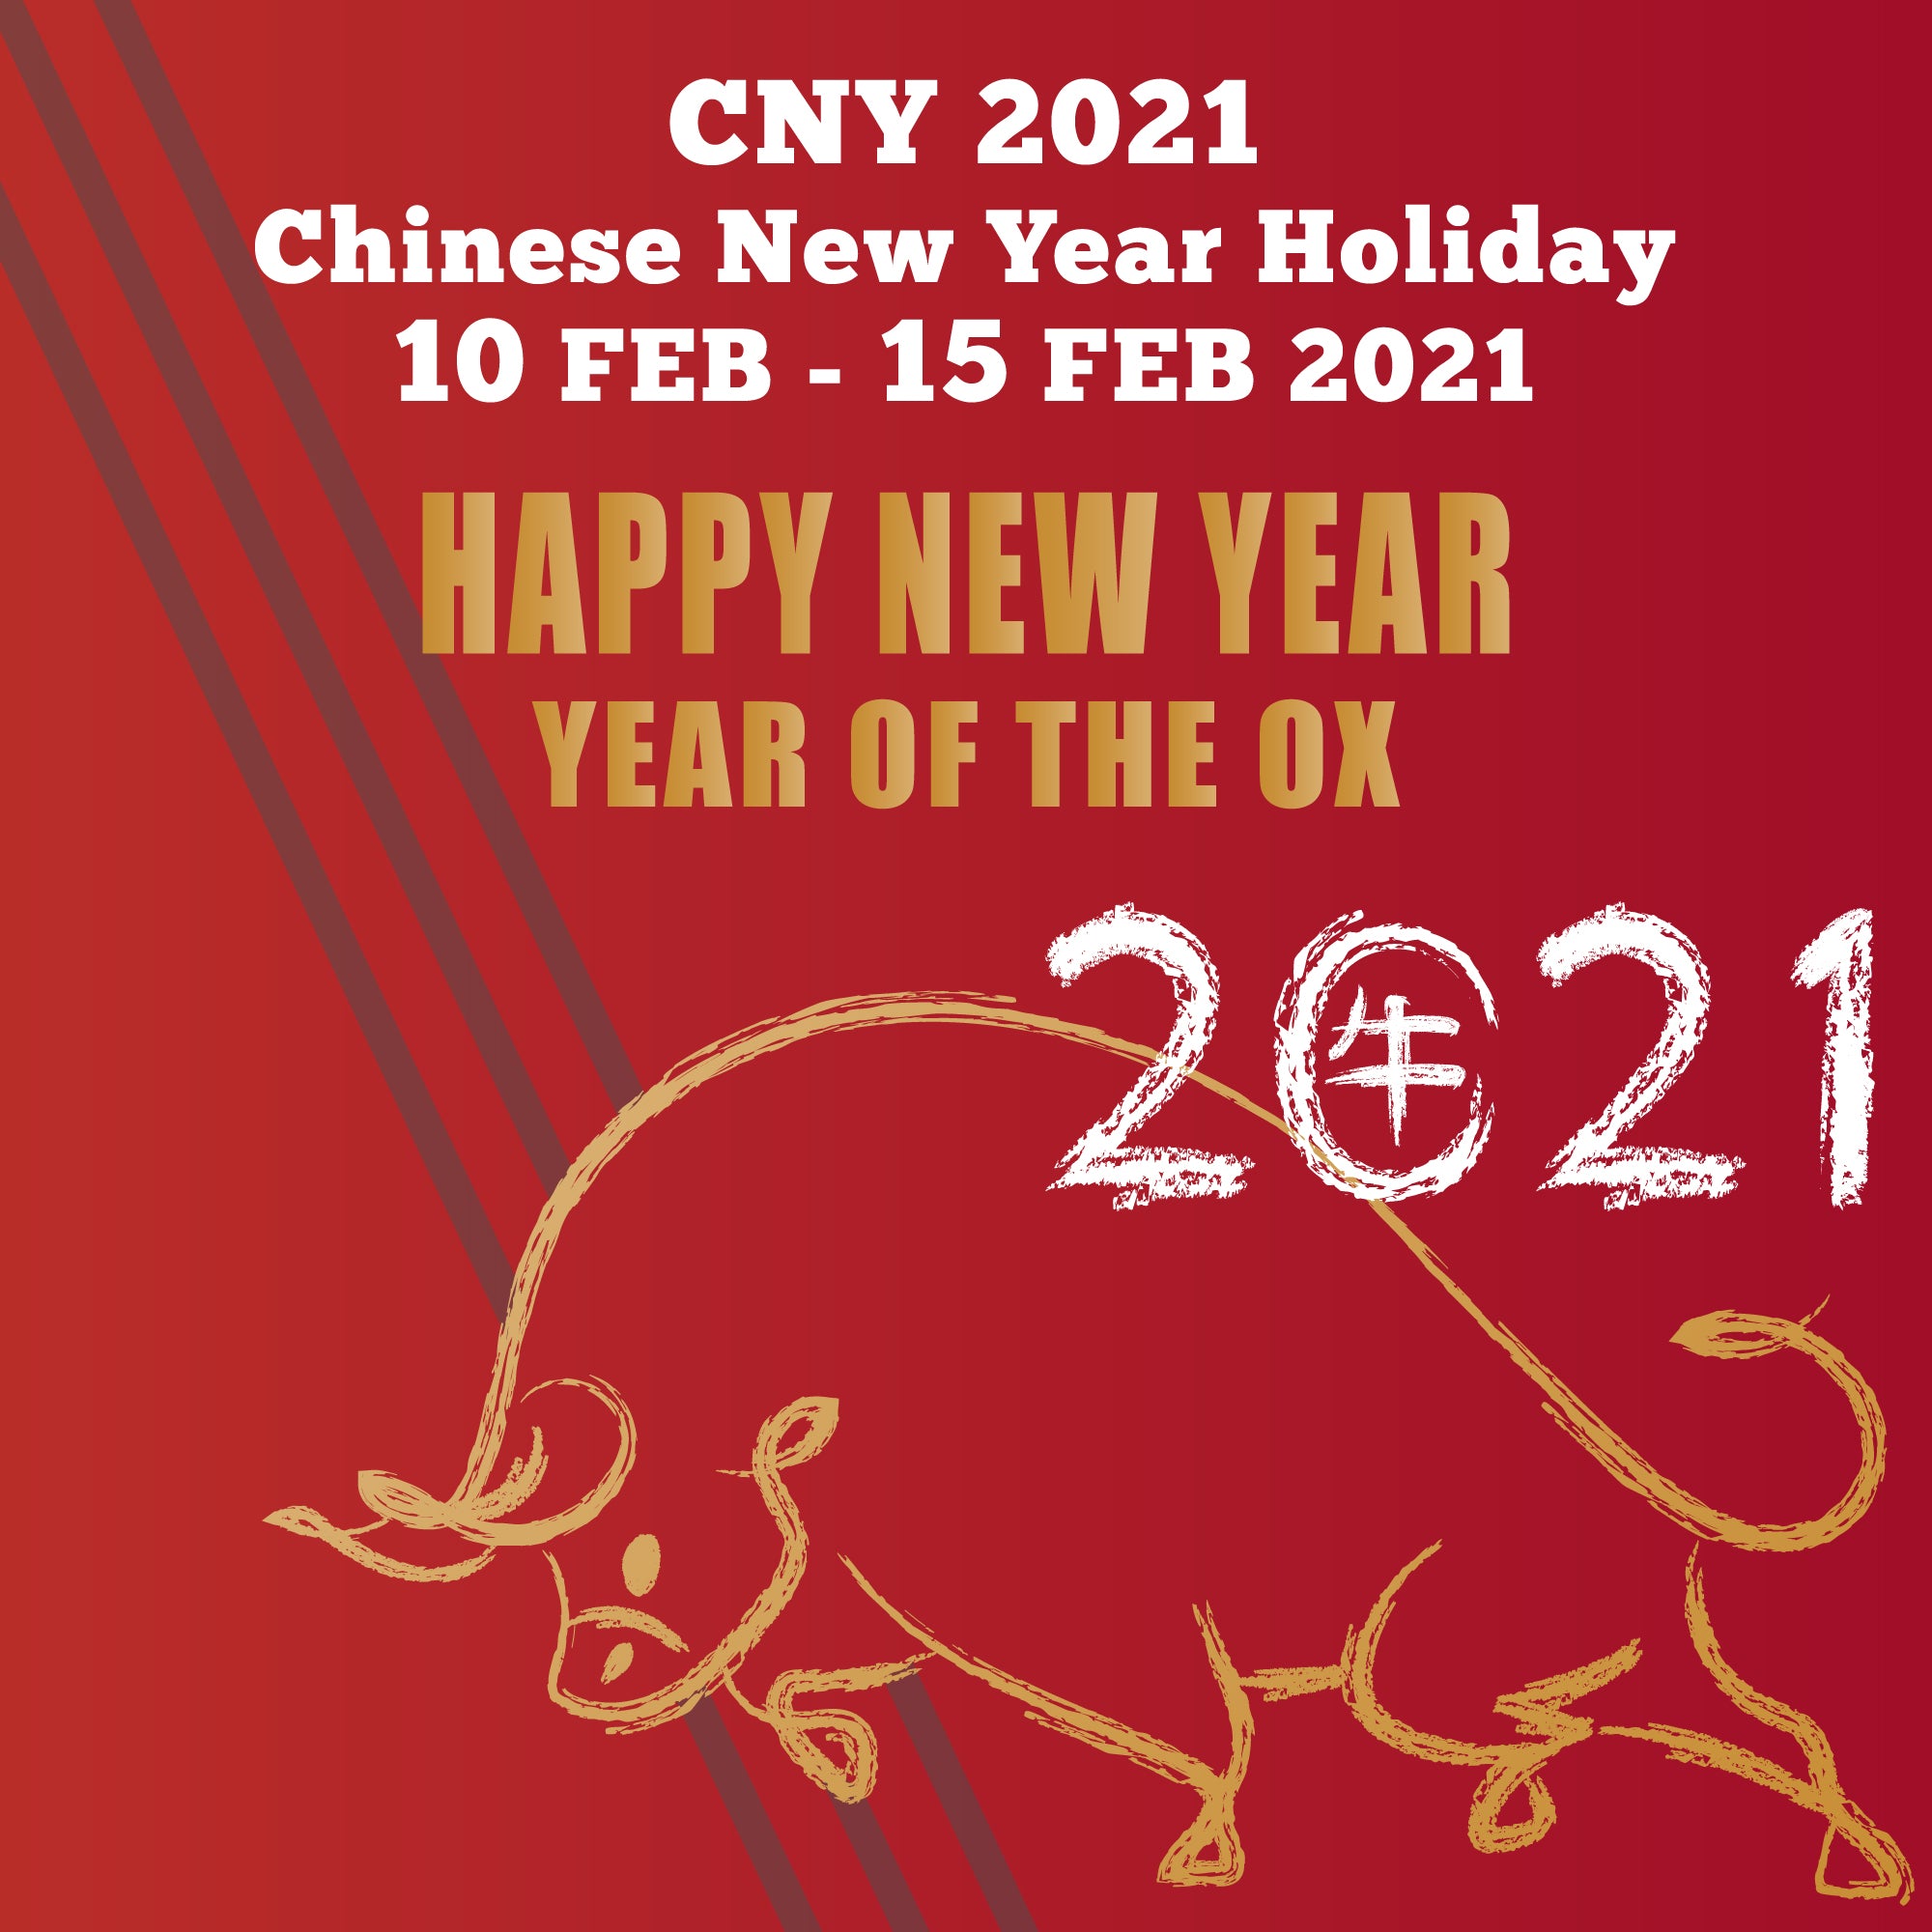 2021 CNY Holiday